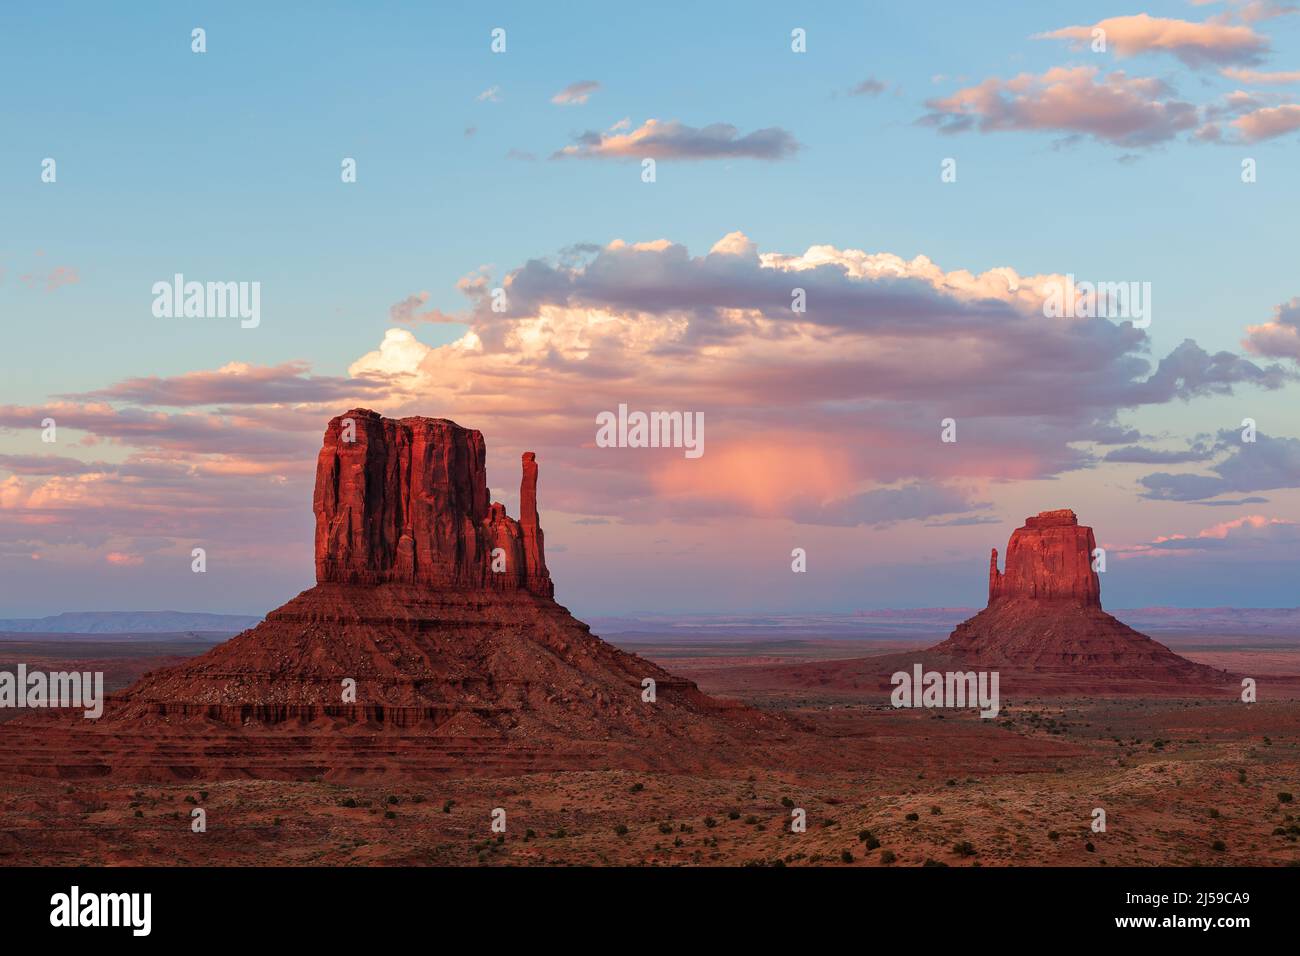 Monument Valley Navajo Tribal Park au coucher du soleil Banque D'Images